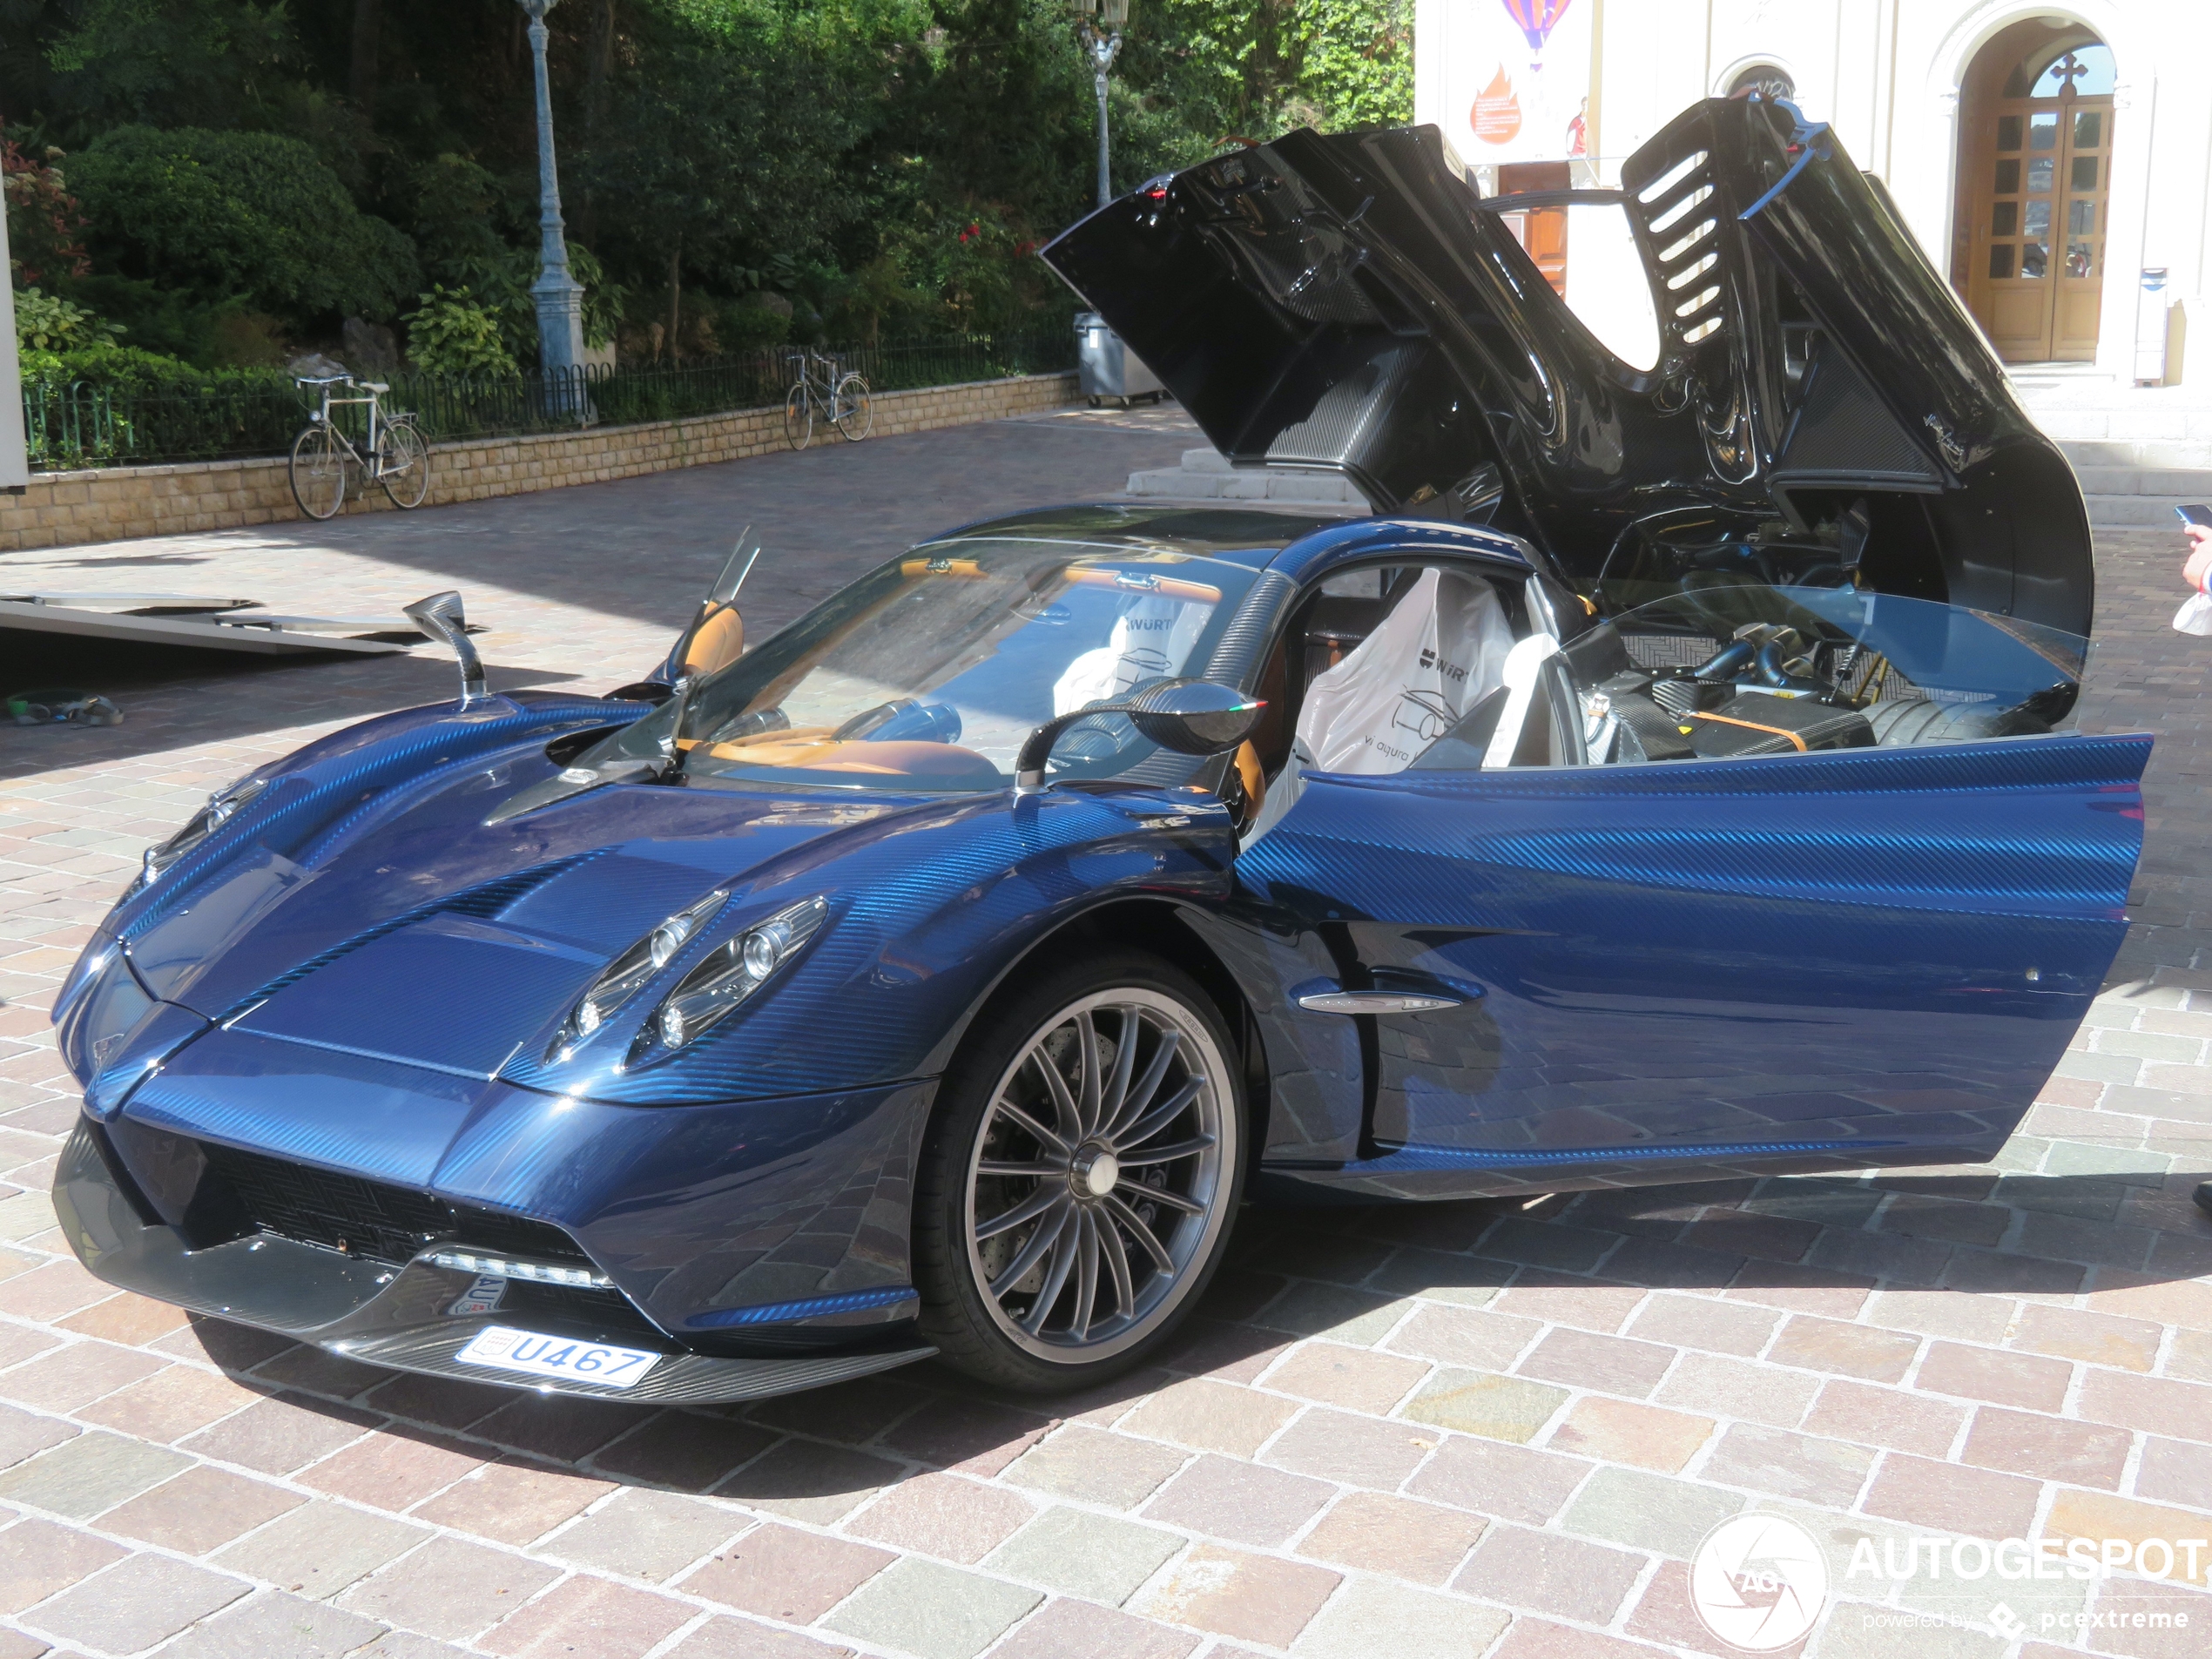 Spik en span afgeleverd in Monaco: Pagani Huayra Roadster